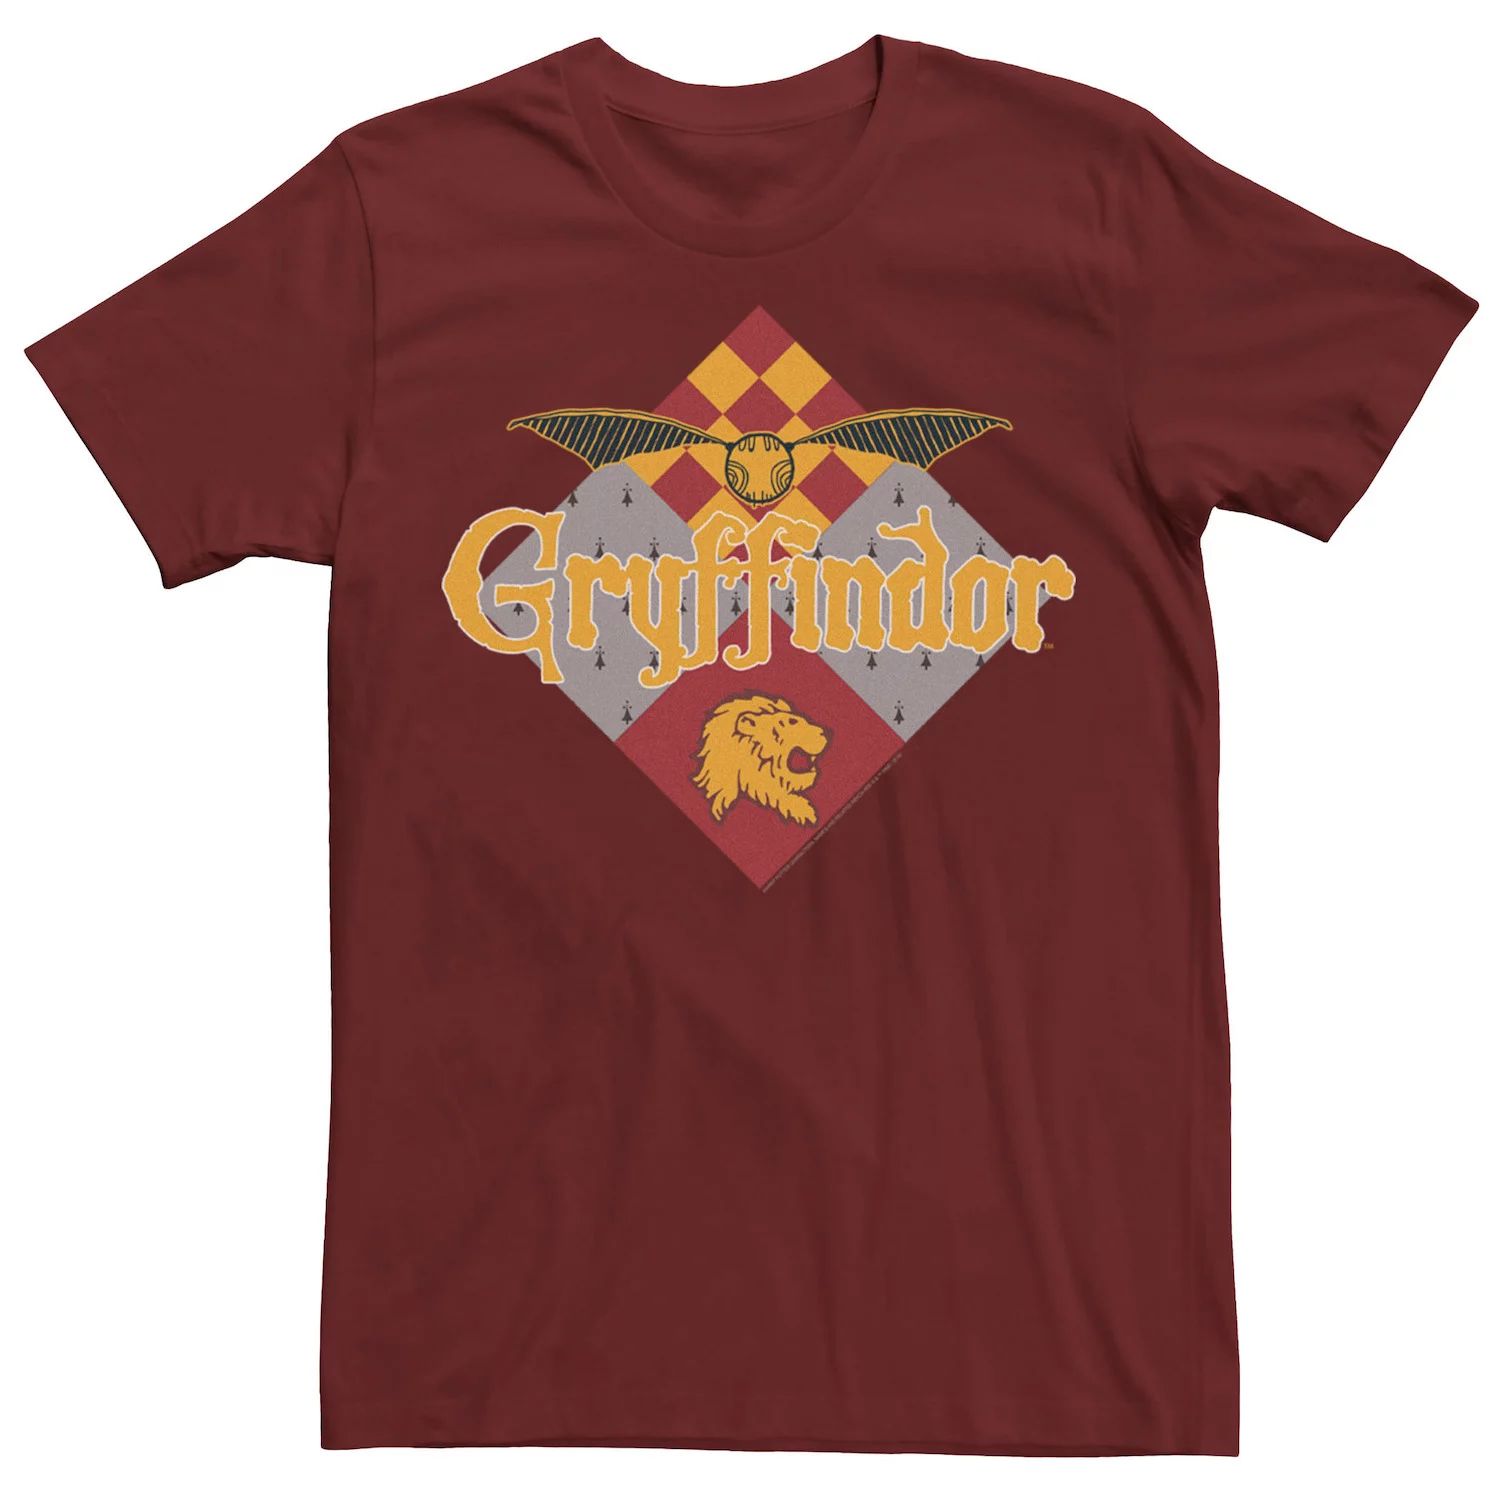 Мужская футболка с логотипом Gryffindor Golden Snitch Harry Potter abystyle копилка harry potter golden snitch